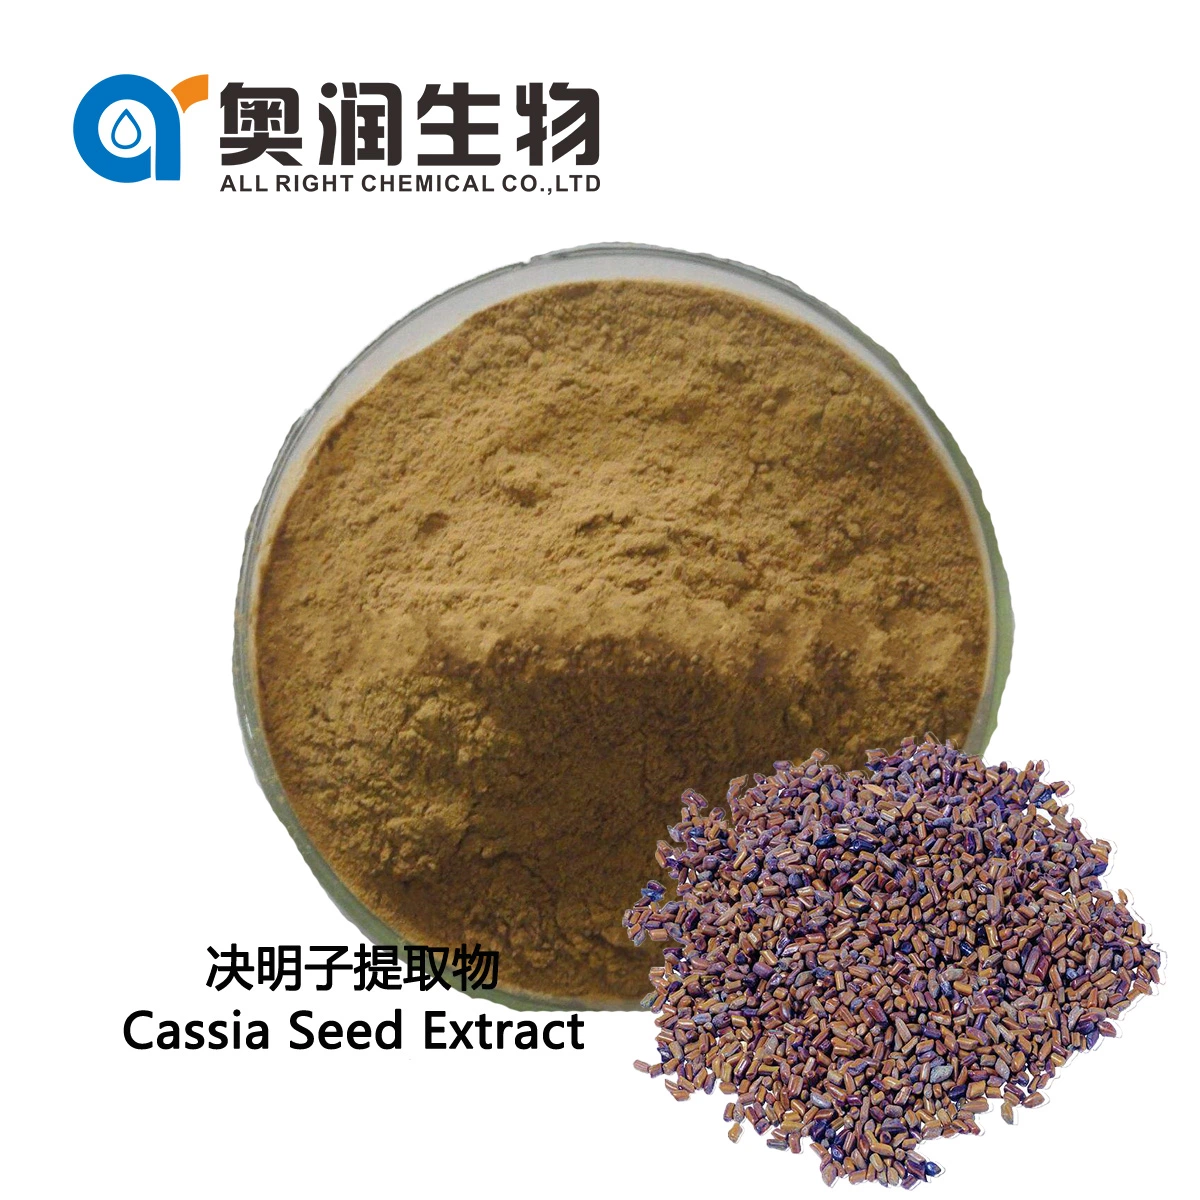 La fábrica de alta calidad de semillas de Cassia Wholesale/Suppliers beneficios Semen Cassia extraer 5: 1 1 10:20: 1 Extracto de semillas de Cassia